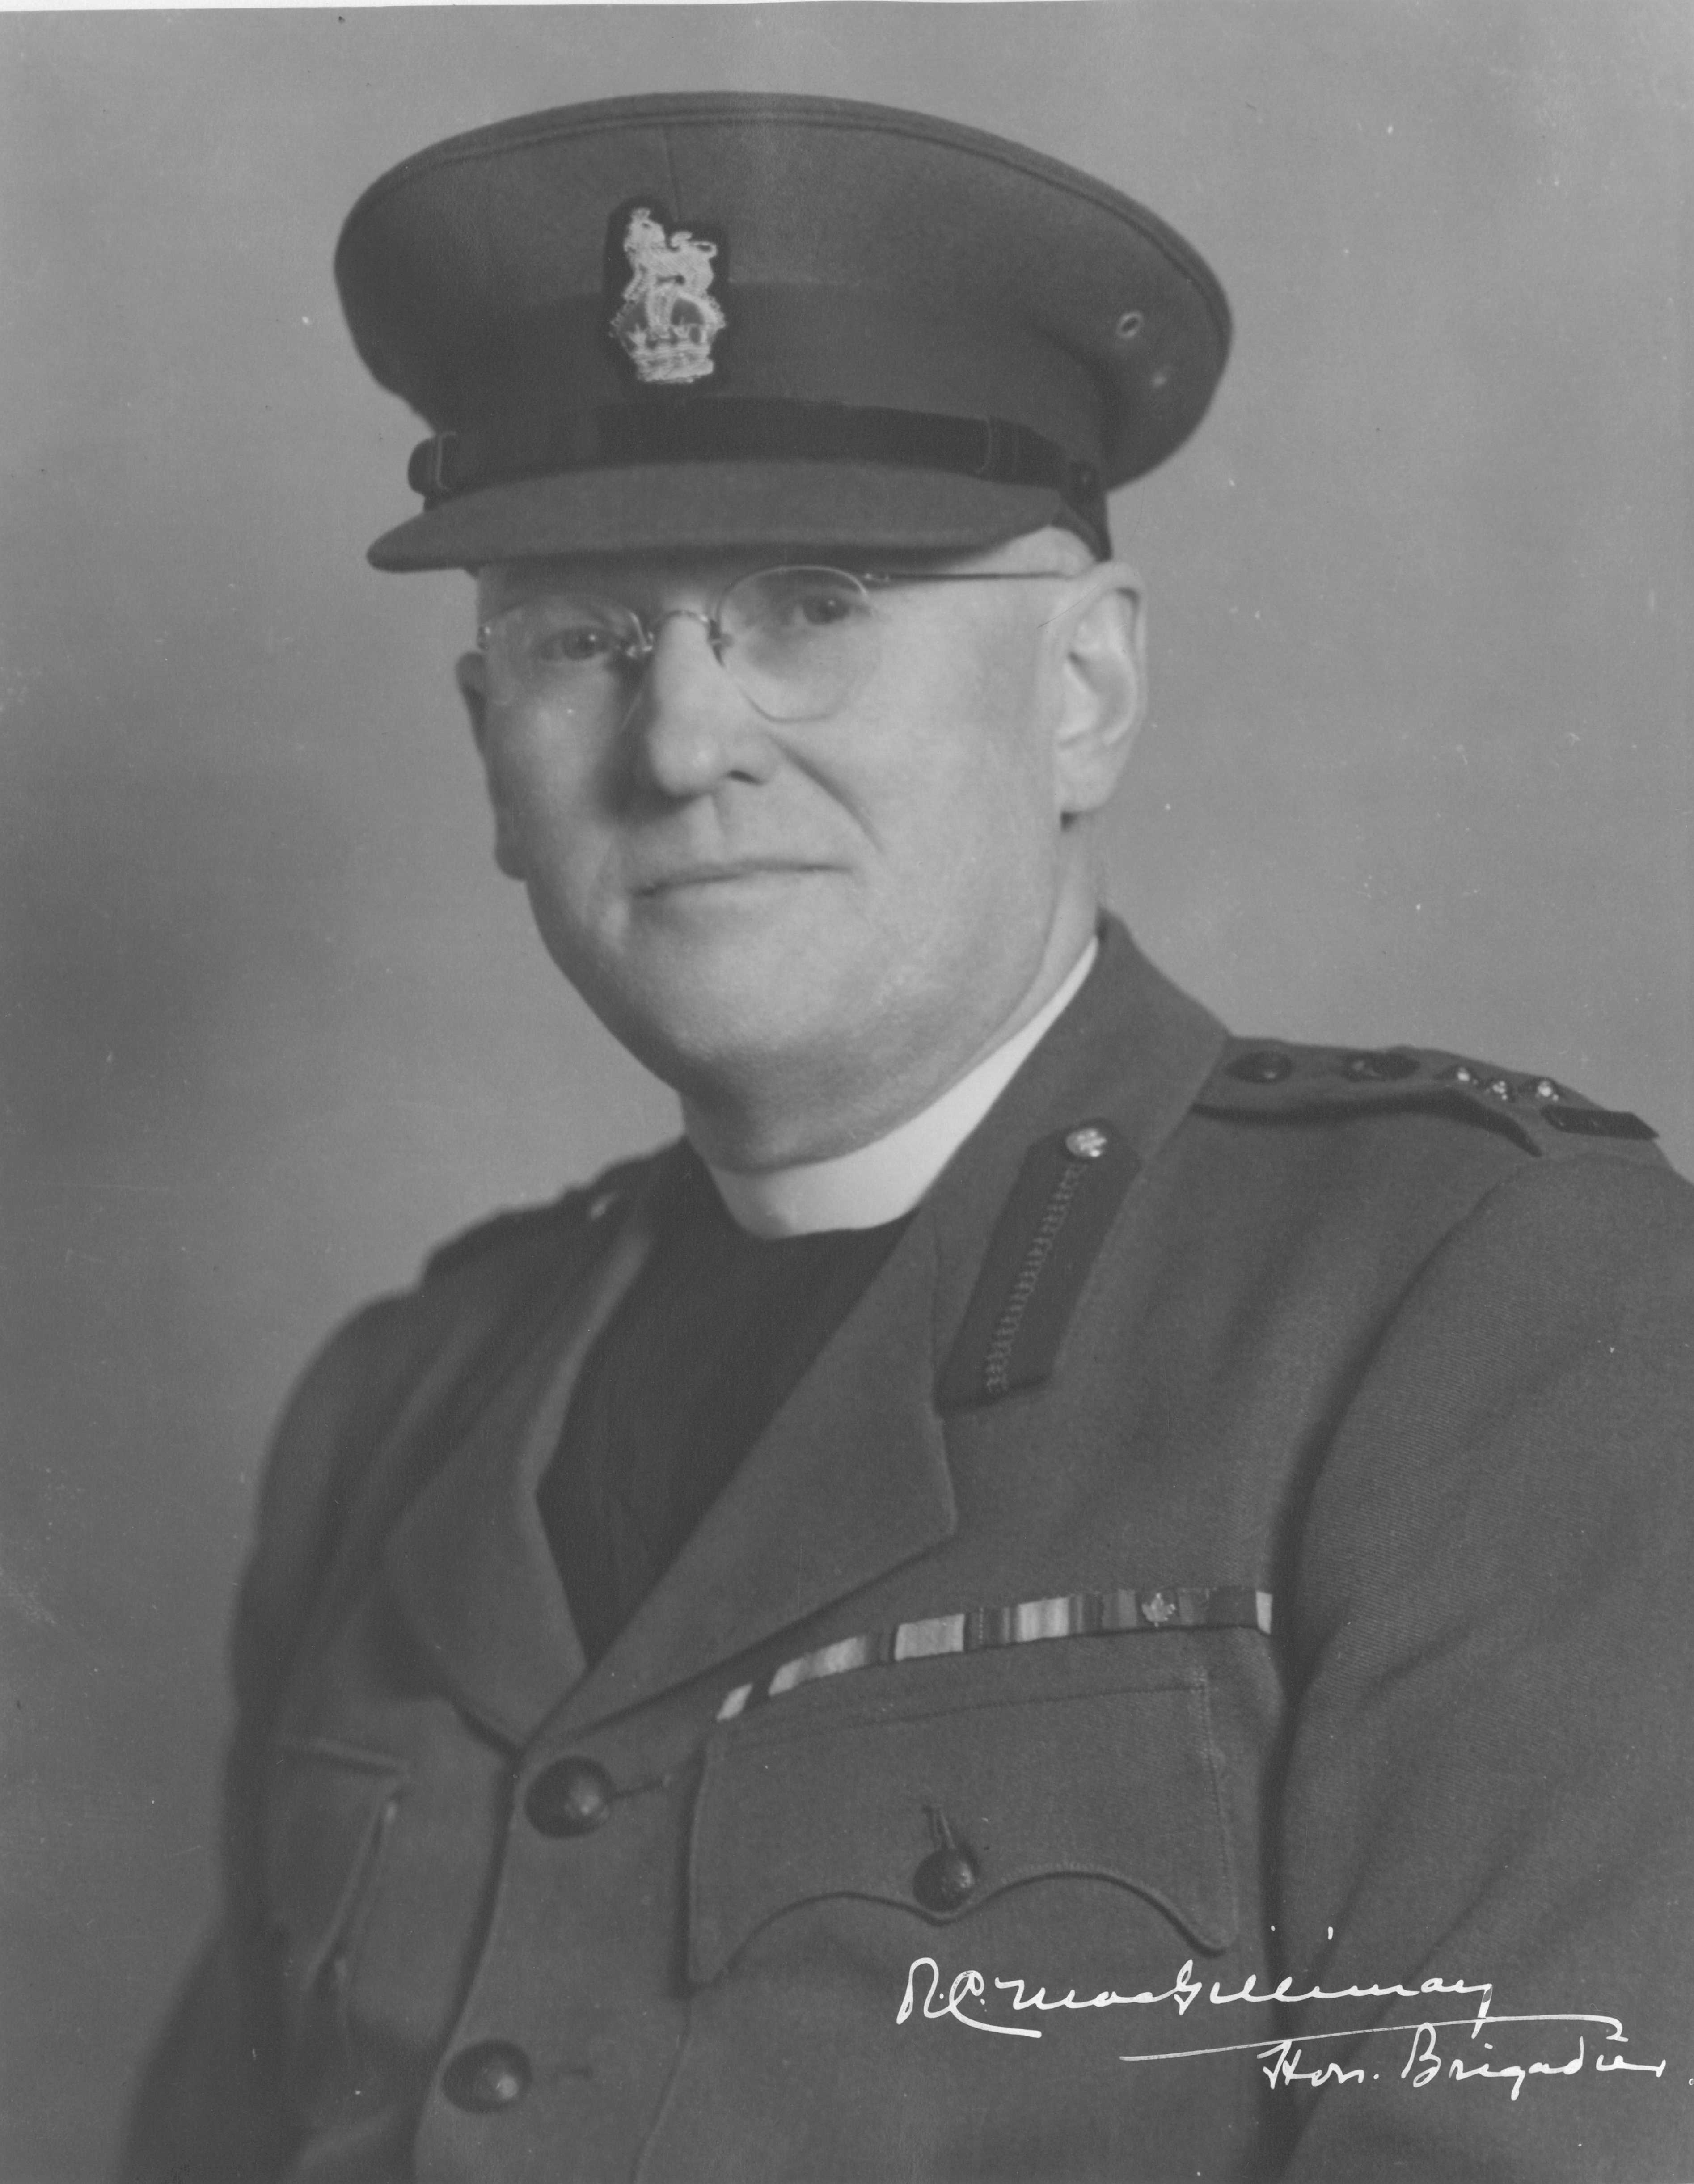 Portrait en noir et blanc – MacGillivray est photographié à partir de la poitrine. Ses barrettes auxquelles sont fixées des décorations pour service méritoire sont visibles sur sa veste. Il porte un uniforme militaire ainsi qu’un chapeau.